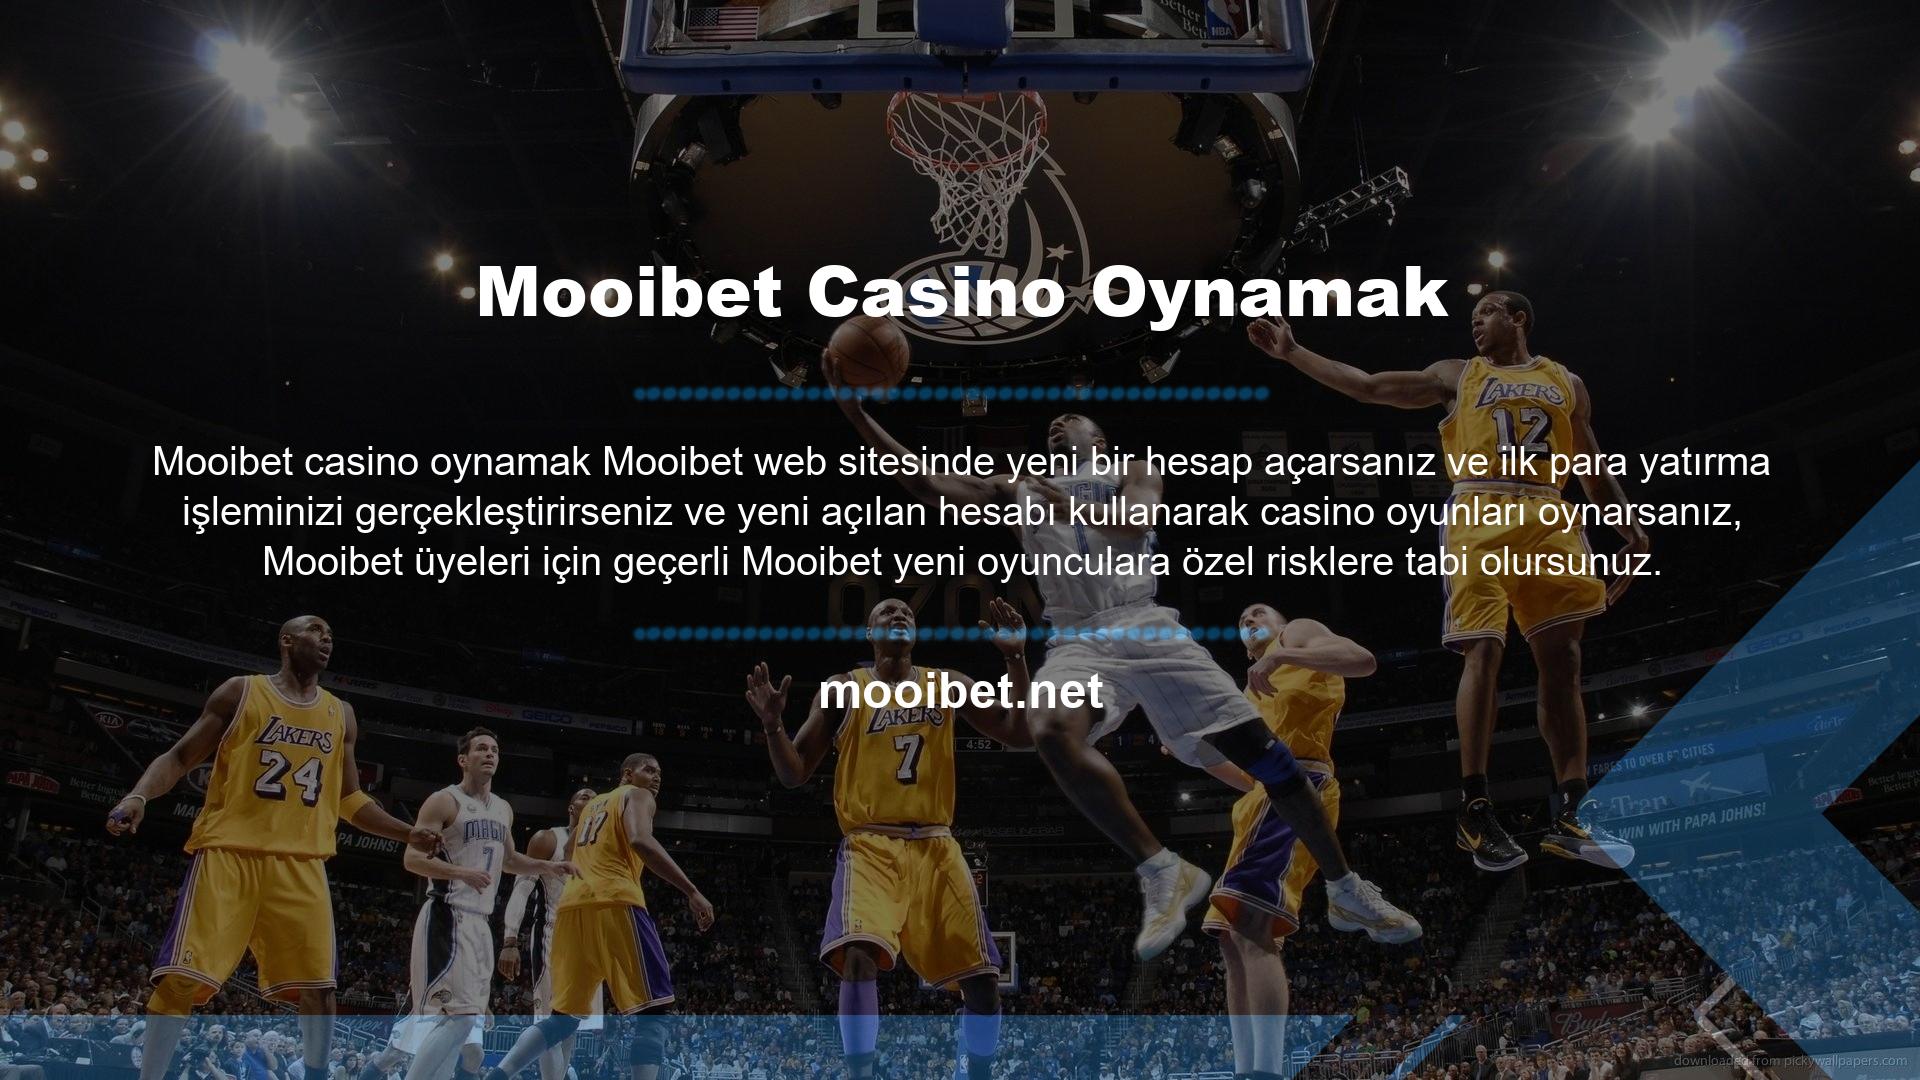 Mooibet Casino Oynamak